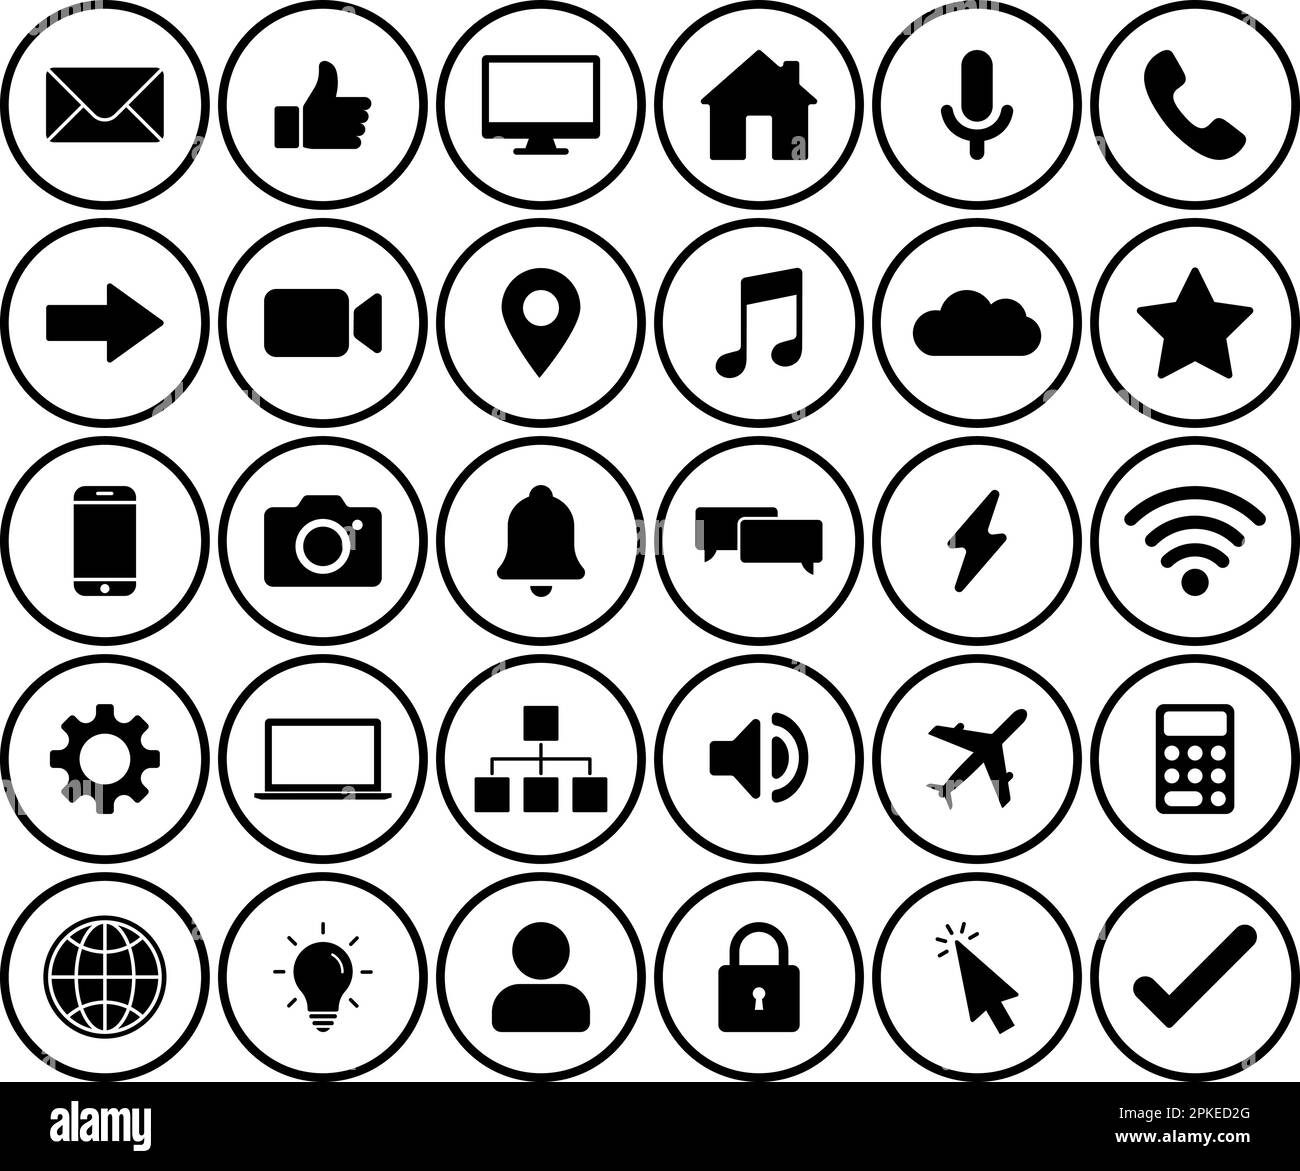 Techno icon set simple design Stock Vector